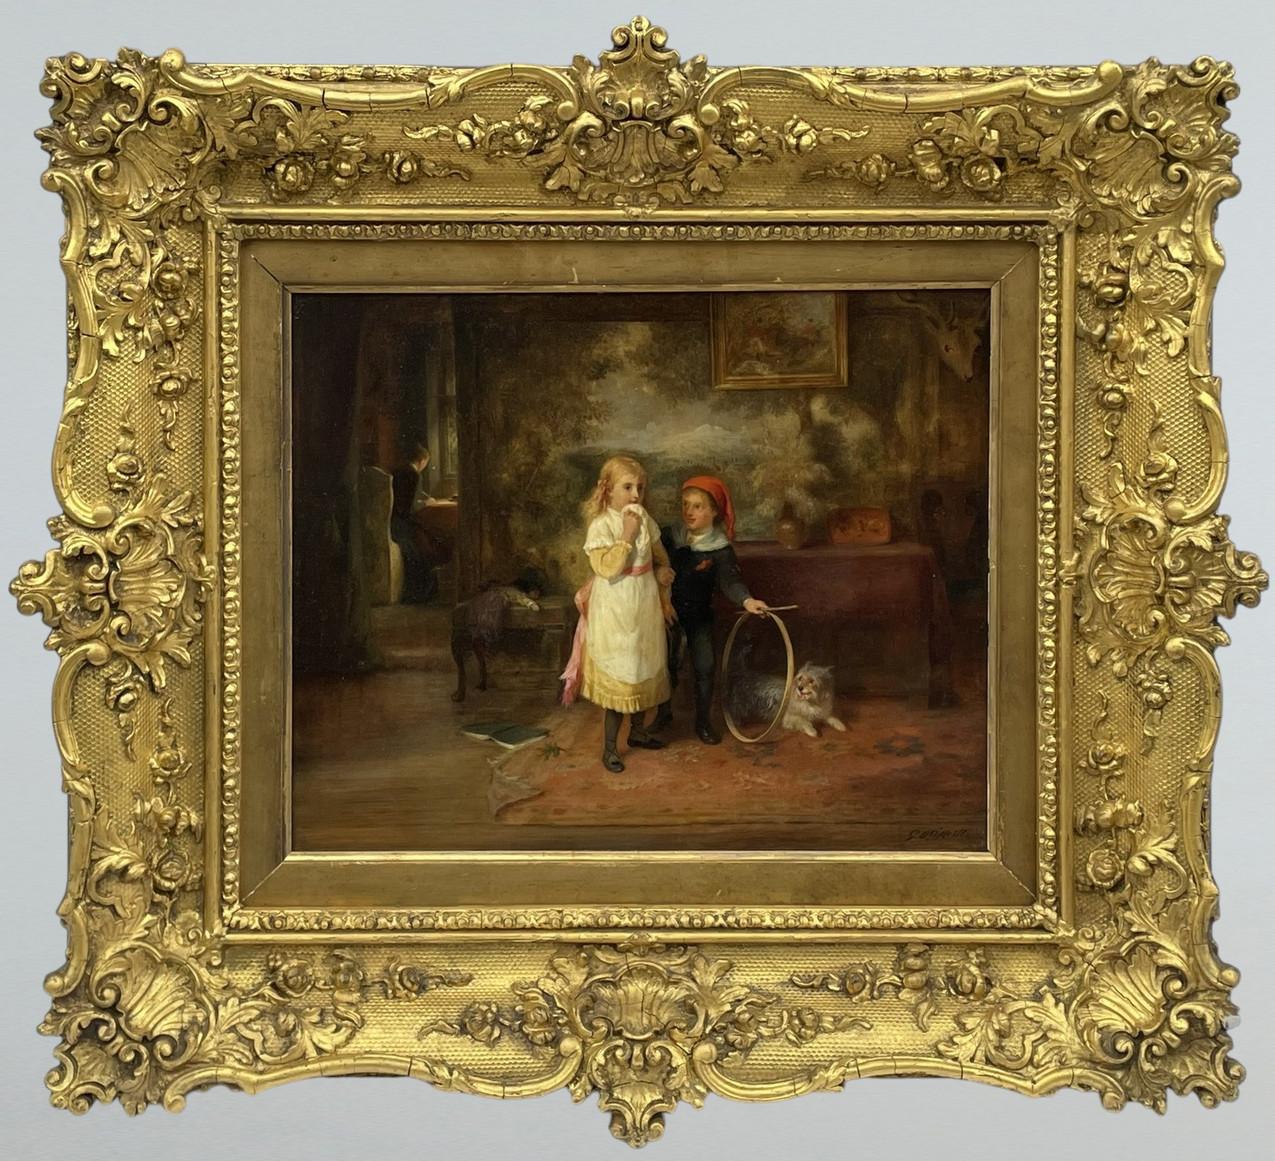 Un exemple de qualité exceptionnelle d'une peinture à l'huile encadrée du milieu de l'époque victorienne sur panneau d'artiste, de taille compacte et de qualité muséale, réalisée par le célèbre peintre irlandais George Bernard O'Neill. Complet avec